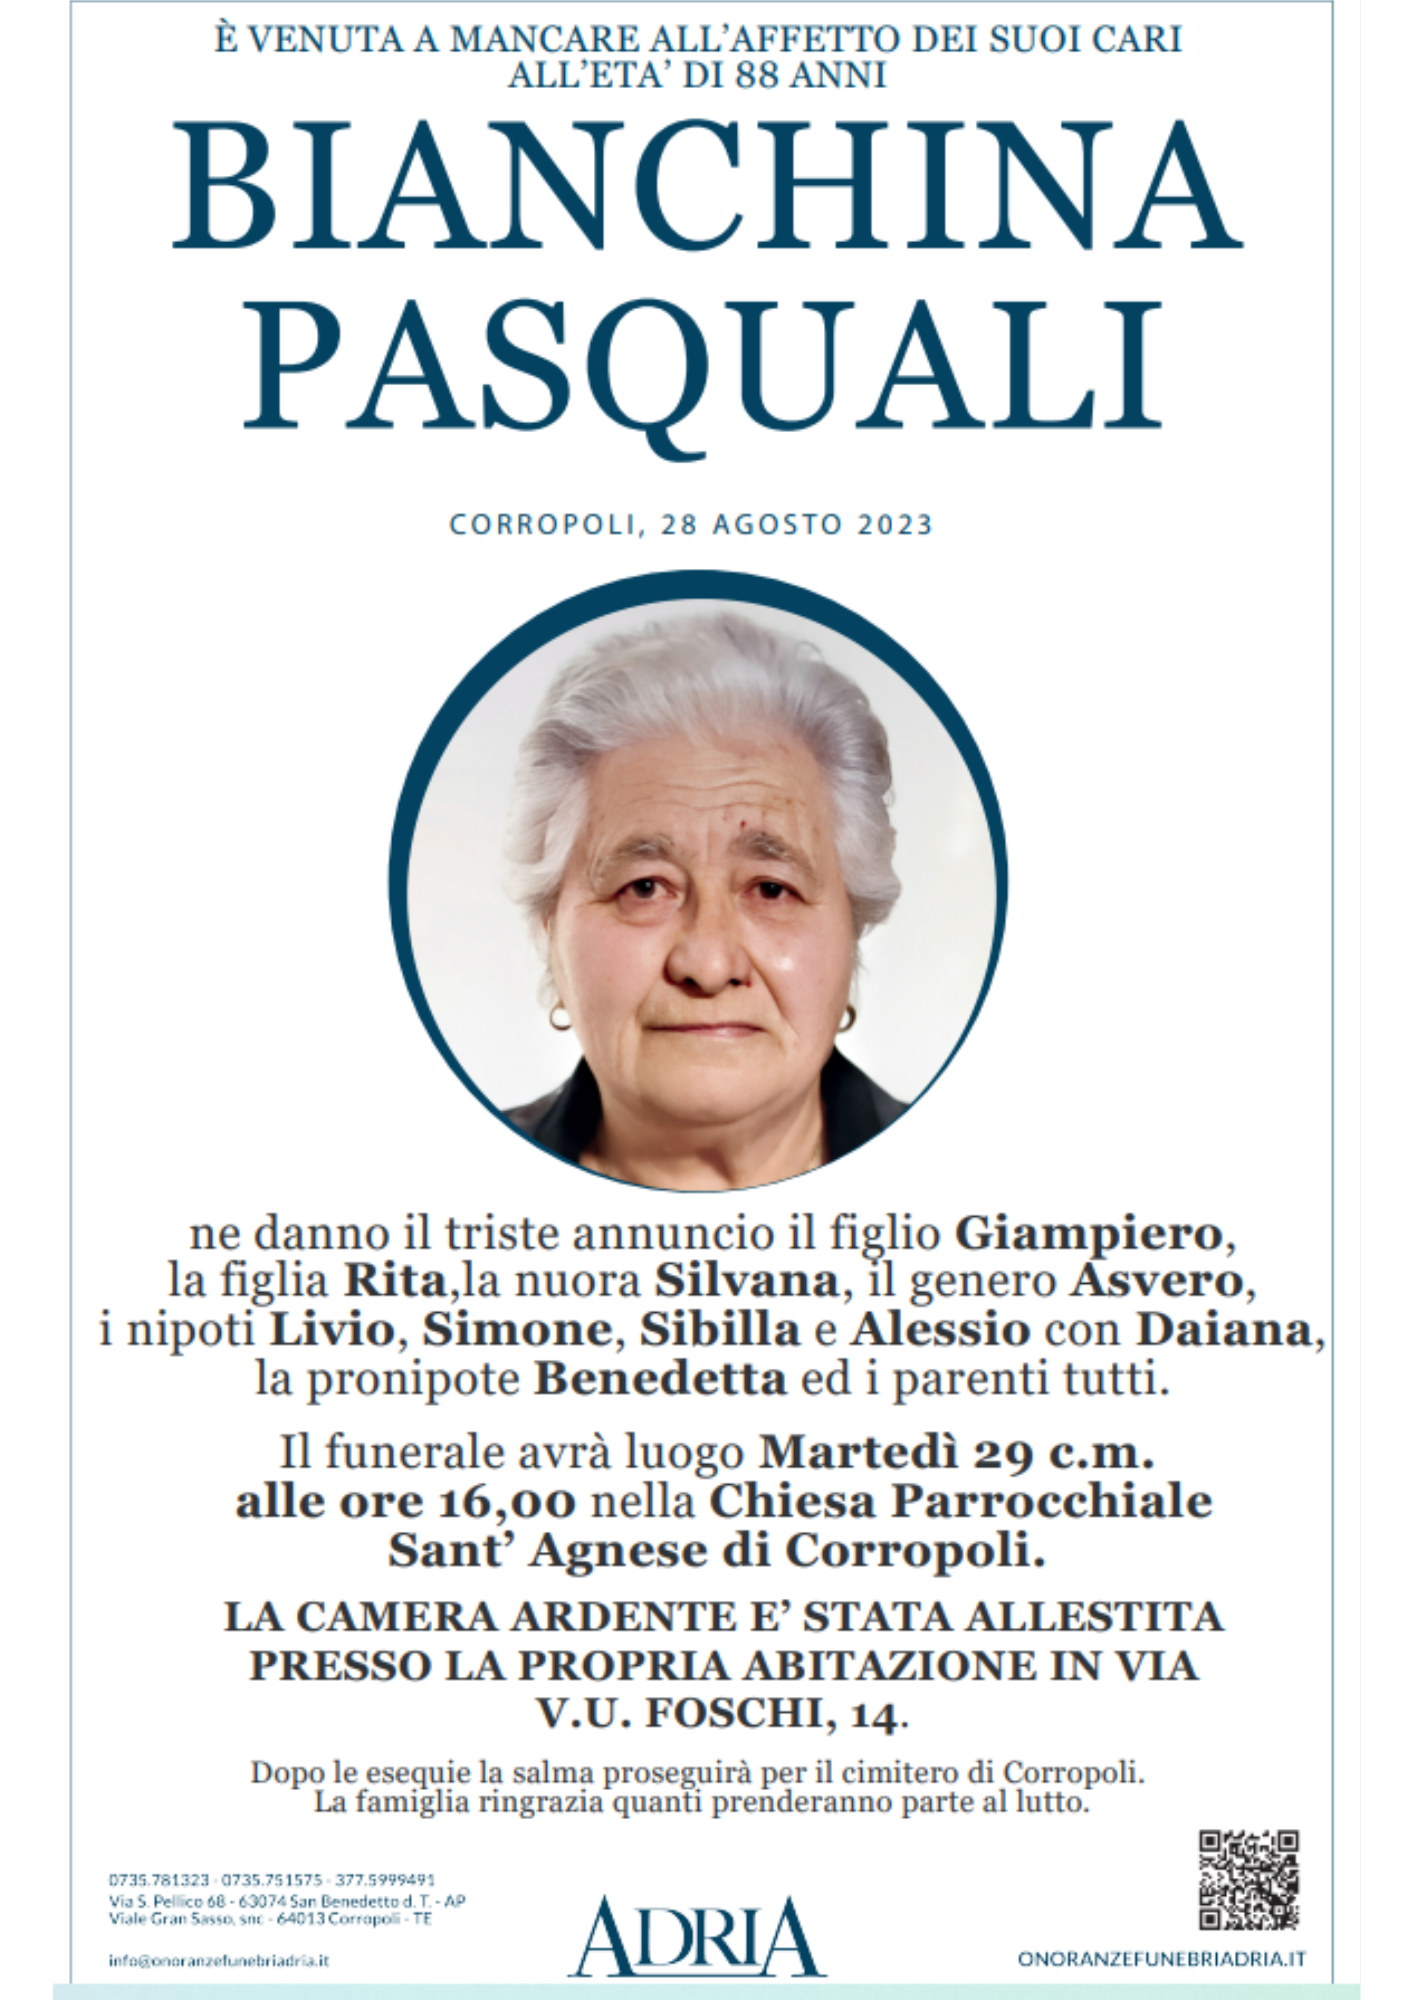 Bianchina Pasquali